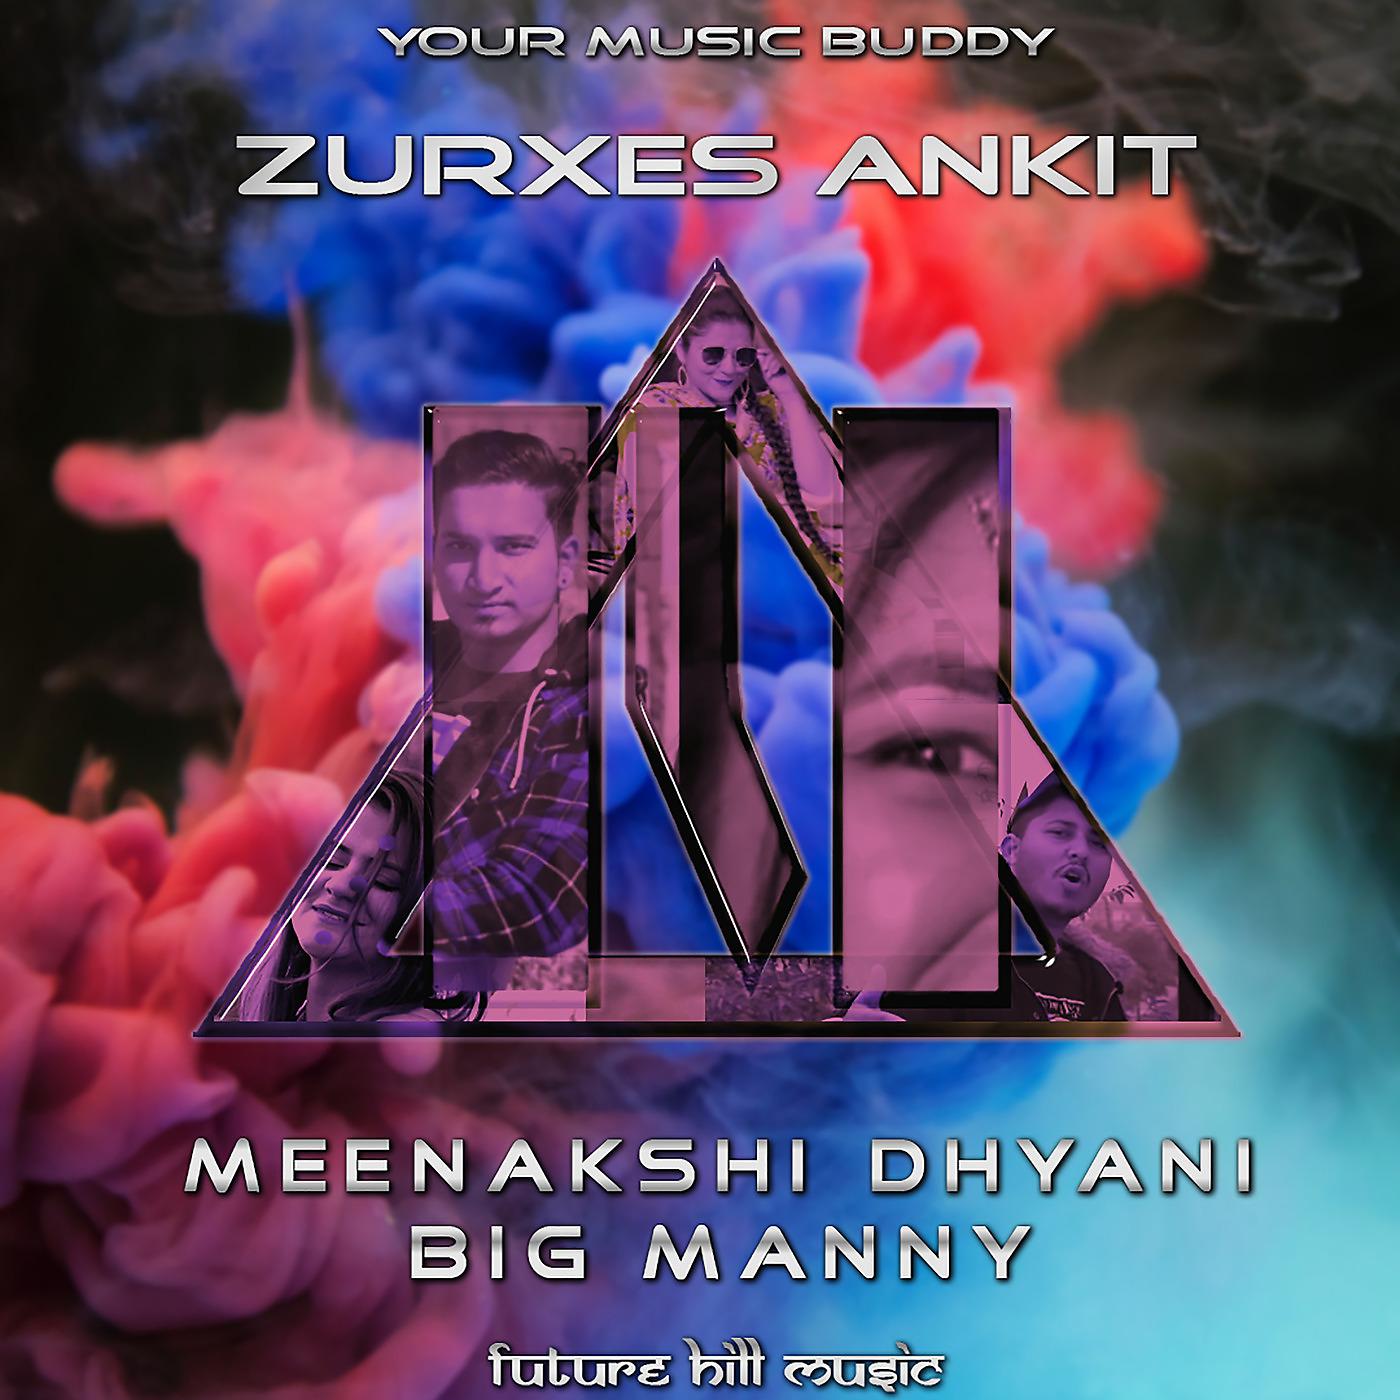 Альбом Zurxes Ankit исполнителя Your Music Buddy